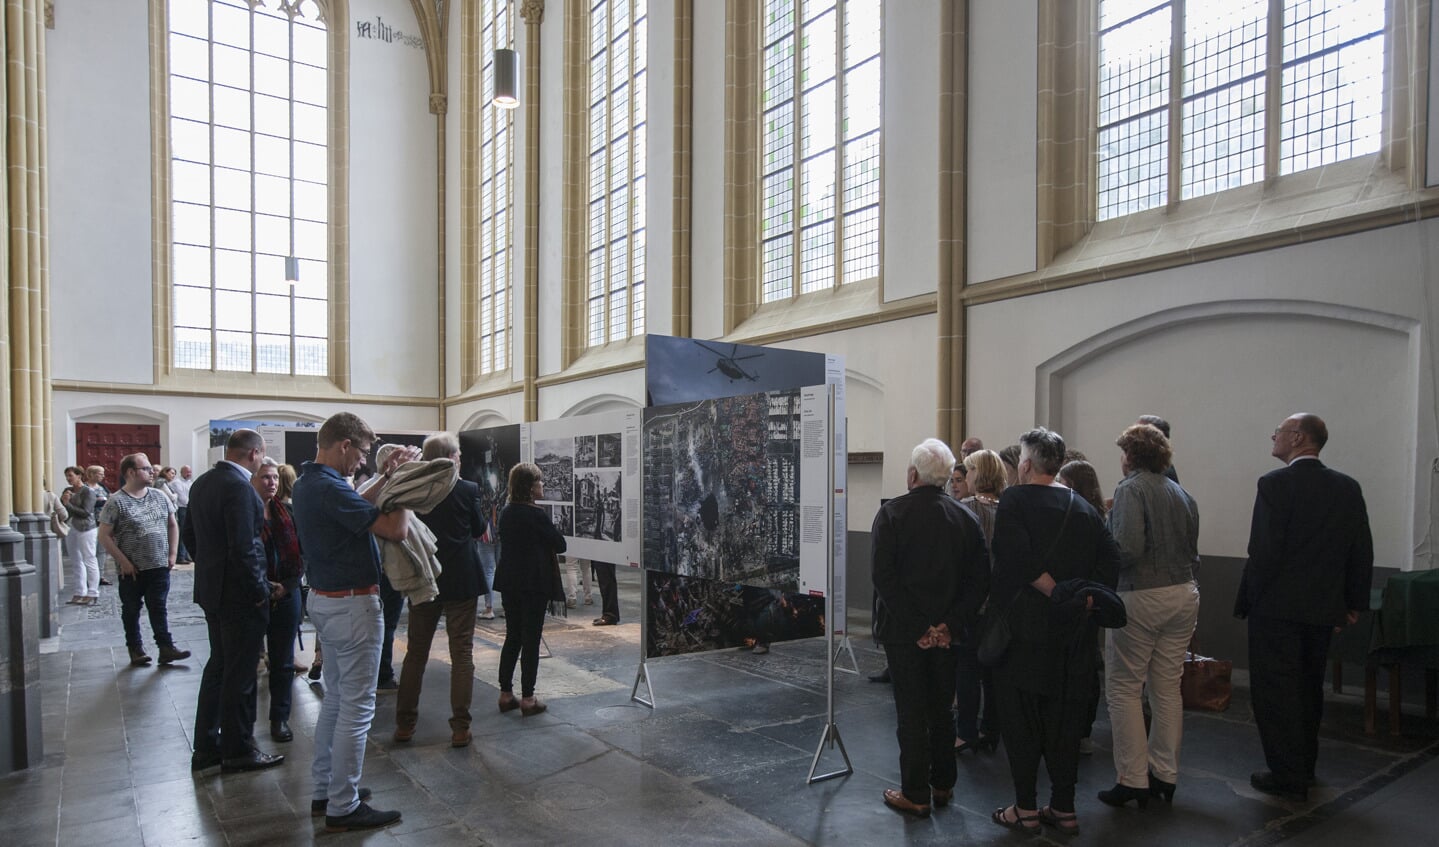 Vorig jaar bezochten ruim 10.000 mensen World Press Photo 16 in Zutphen. Foto: Patrick van Gemert/Zutphens Persbureau